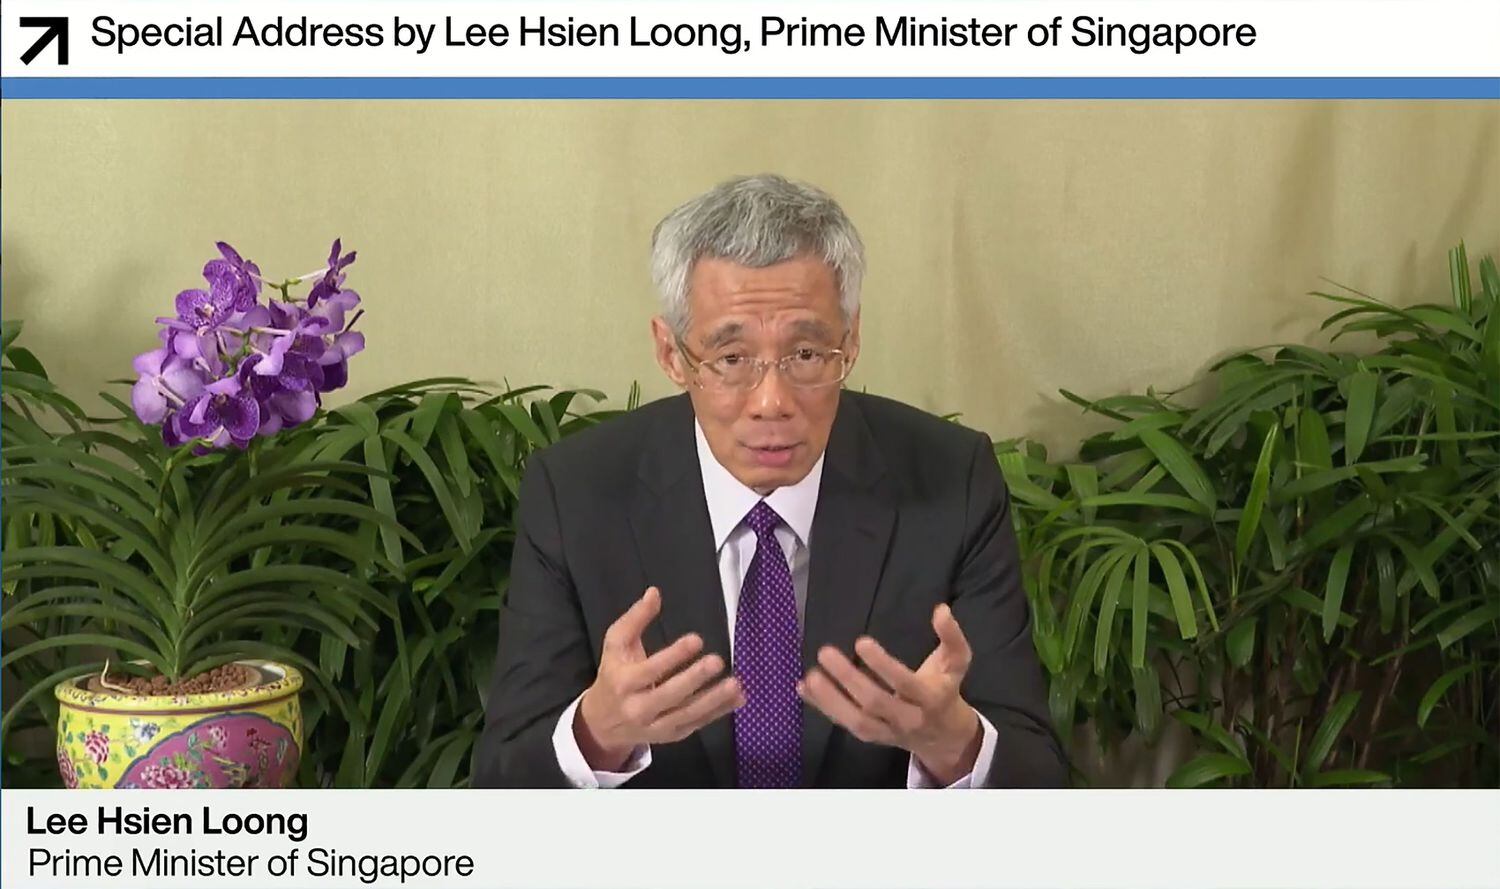 Captura de vídeo de la intervención del primer ministro de Singapur el pasado 29 de enero en la cita virtual del Foro Económico Mundial.